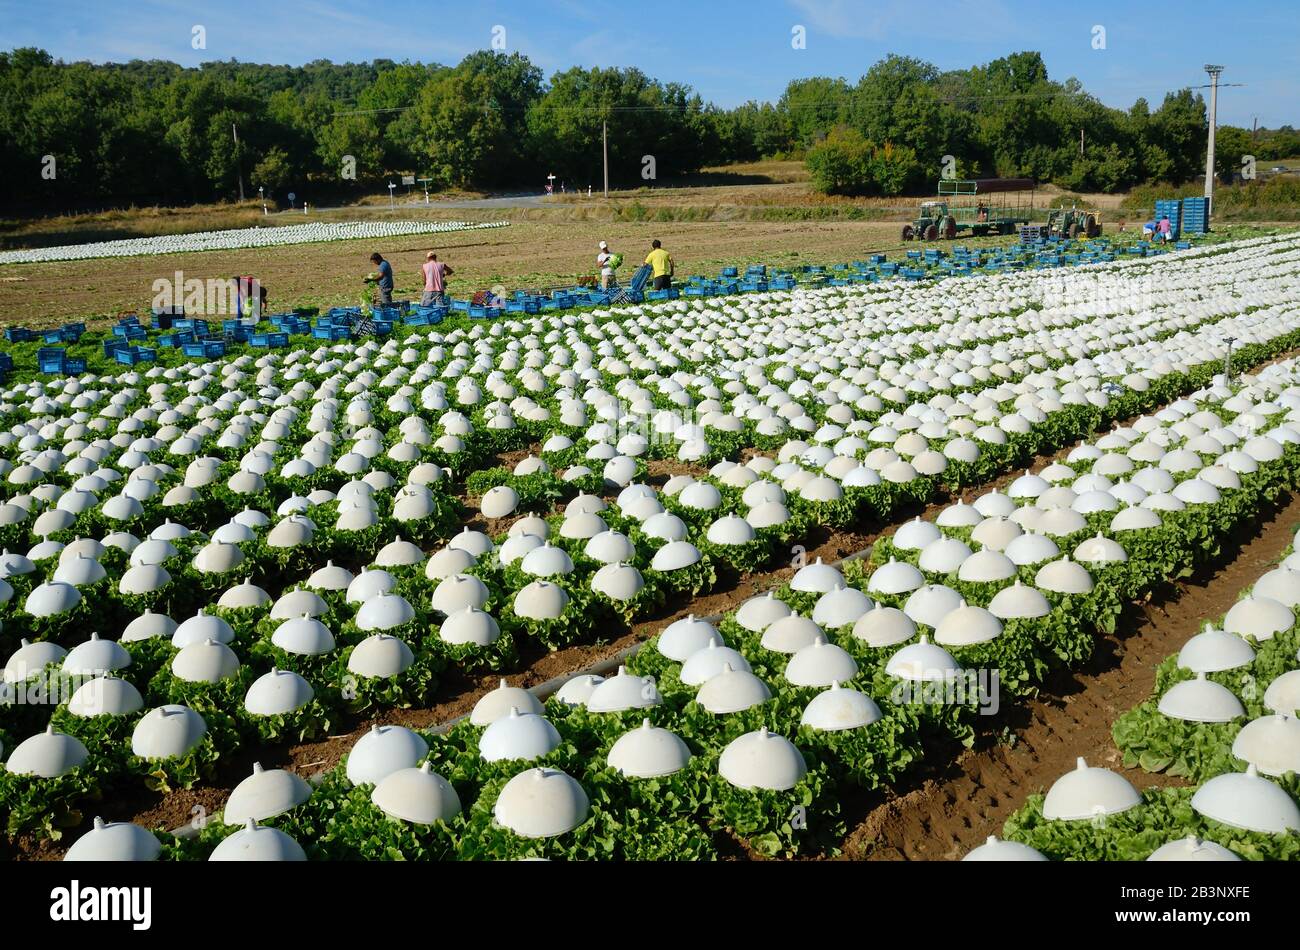 Hileras de lechugas que crecen bajo cloches plásticos en el campo de la agricultura intensiva, el mercado de jardinería o Horticultura Provenza Francia Foto de stock